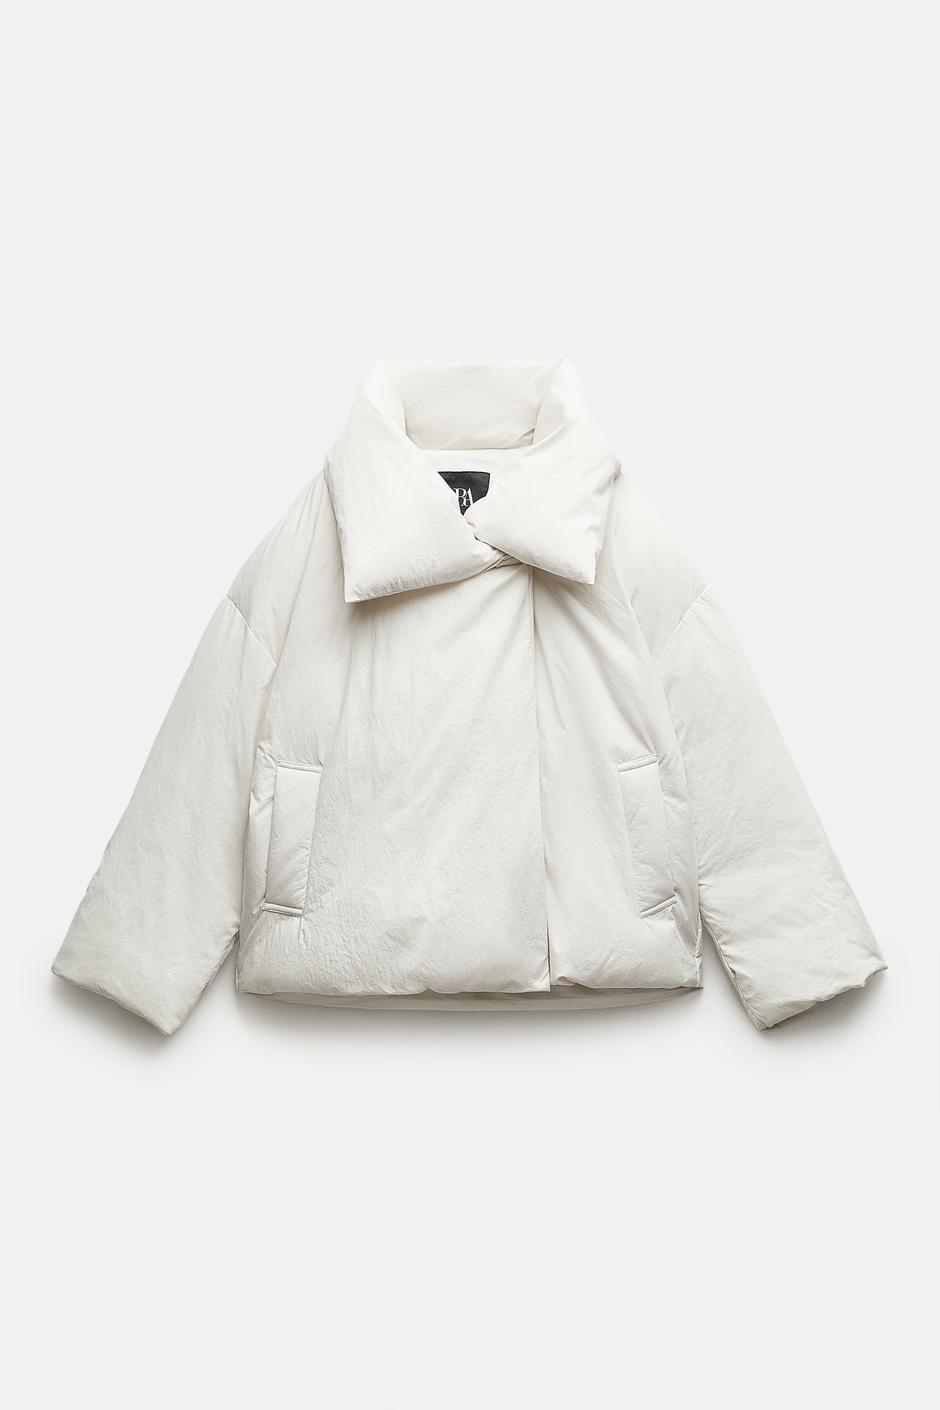 Foto: Zara, bijela jakna s ispunom (prije 69,95 eura, sada 29,99 eura) | Autor: Zara